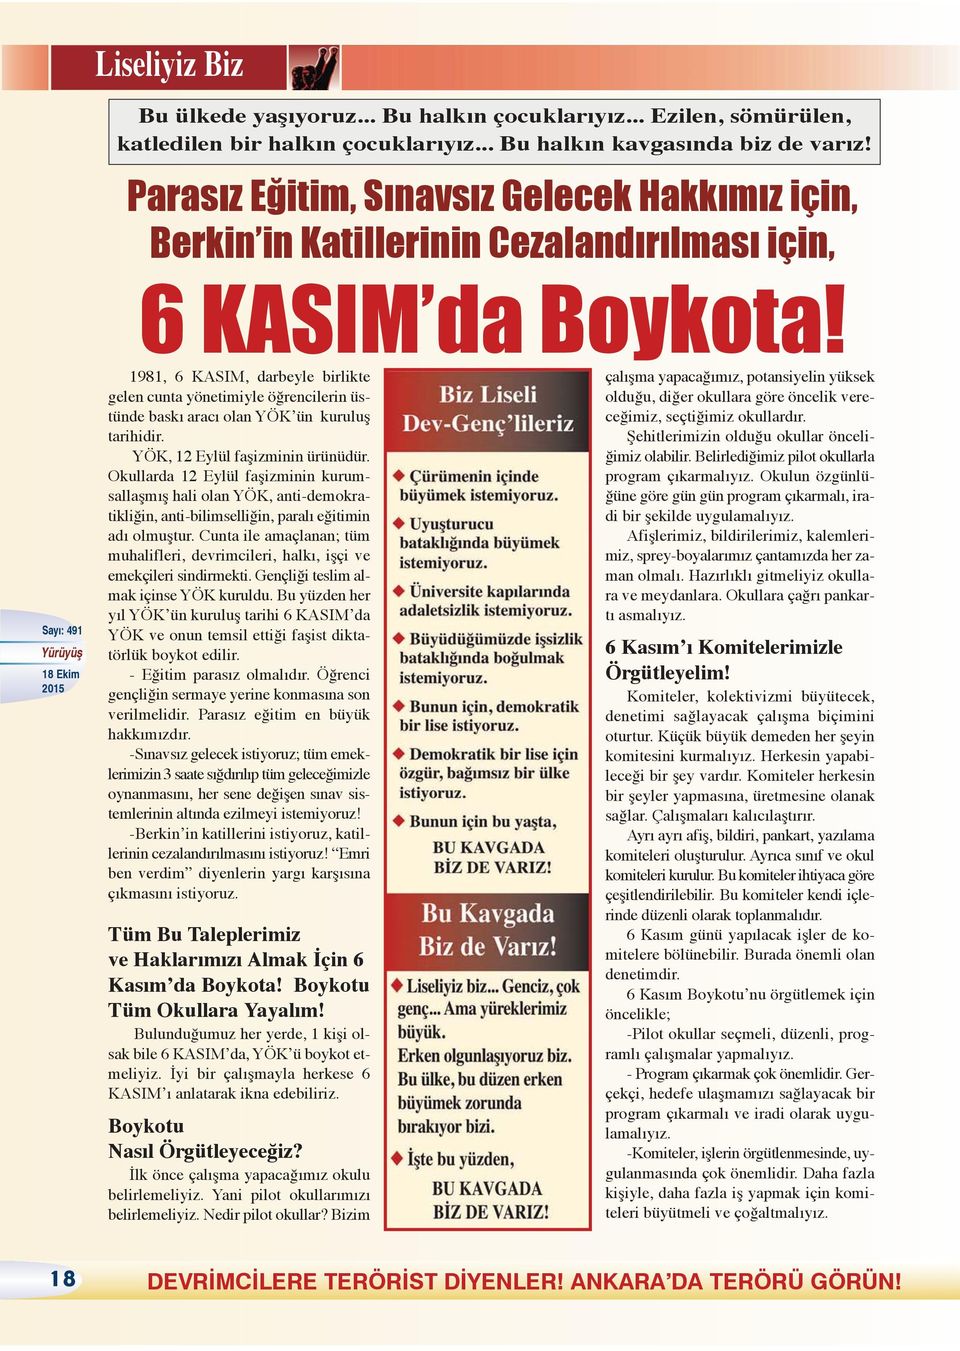 1981, 6 KASIM, darbeyle birlikte gelen cunta yönetimiyle öğrencilerin üstünde baskı aracı olan YÖK ün kuruluş tarihidir. YÖK, 12 Eylül faşizminin ürünüdür.